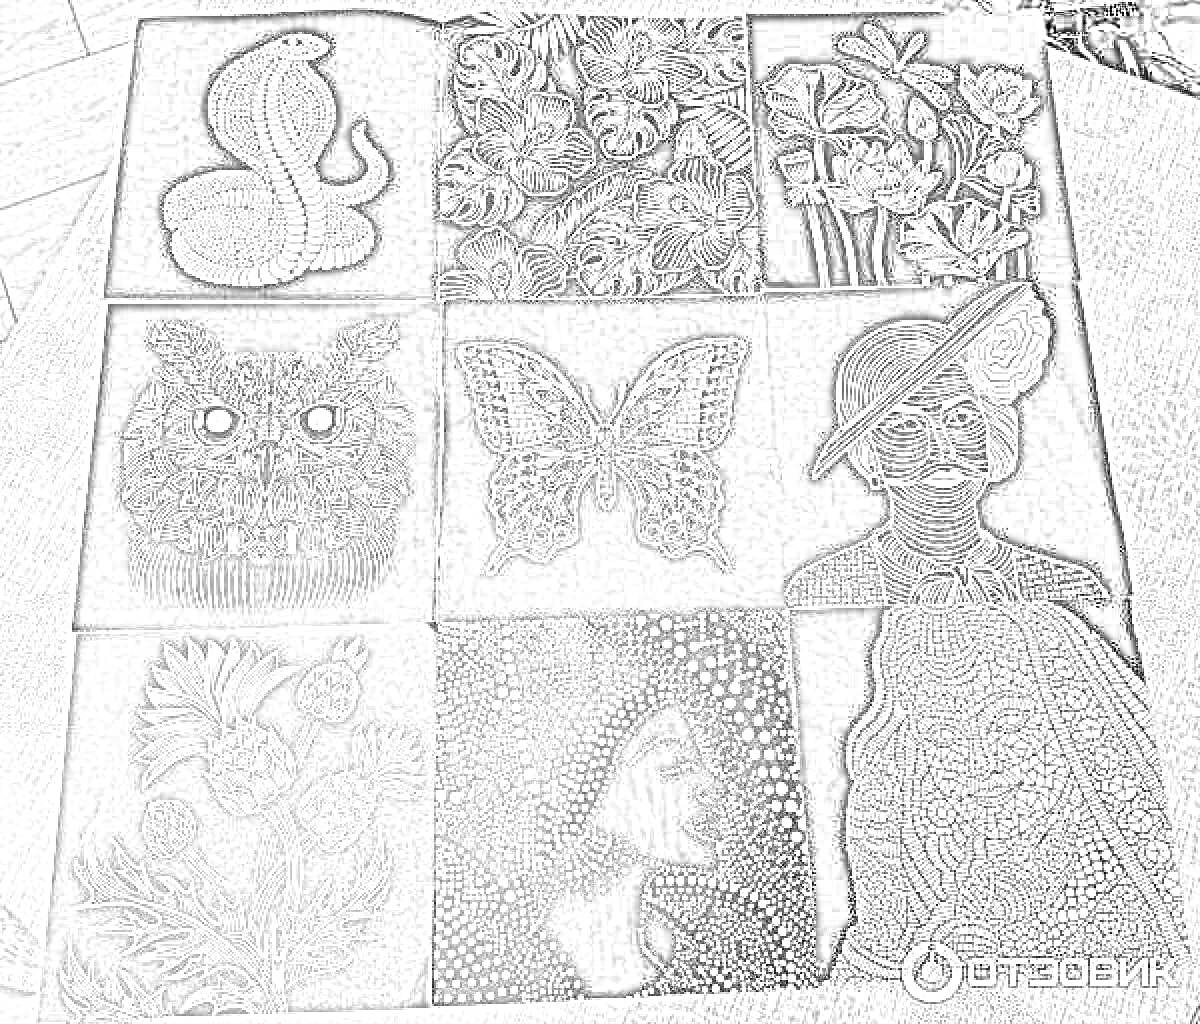 Радужная магия на черном фоне: змея, цветы, сова, бабочка, женский портрет в шляпе, абстрактный портрет